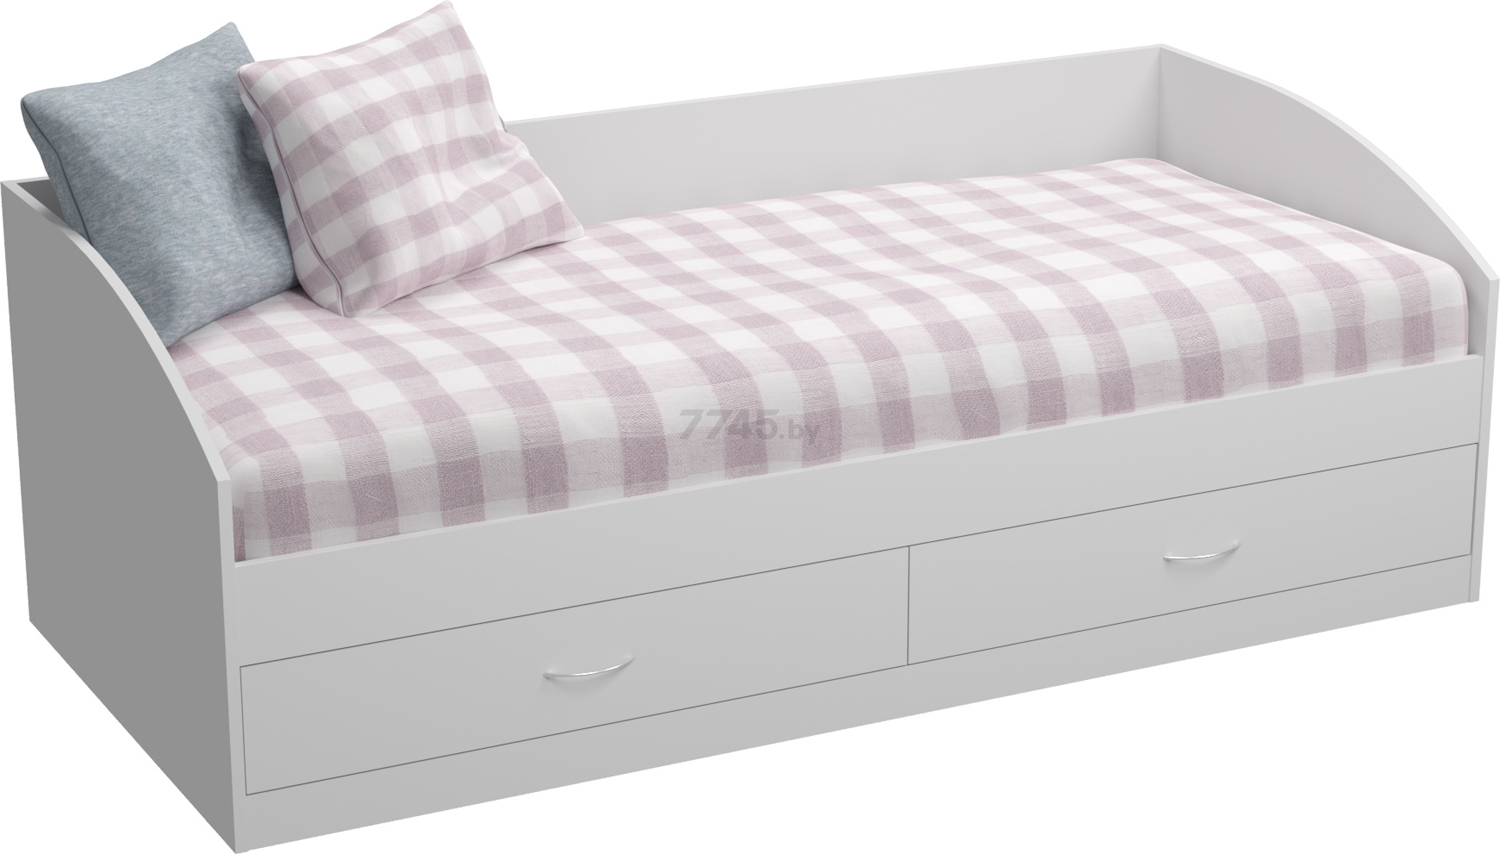 Кровать односпальная ВЛАД-ТОРГ Глостер белый шагрень 90х200 см (4133.00)